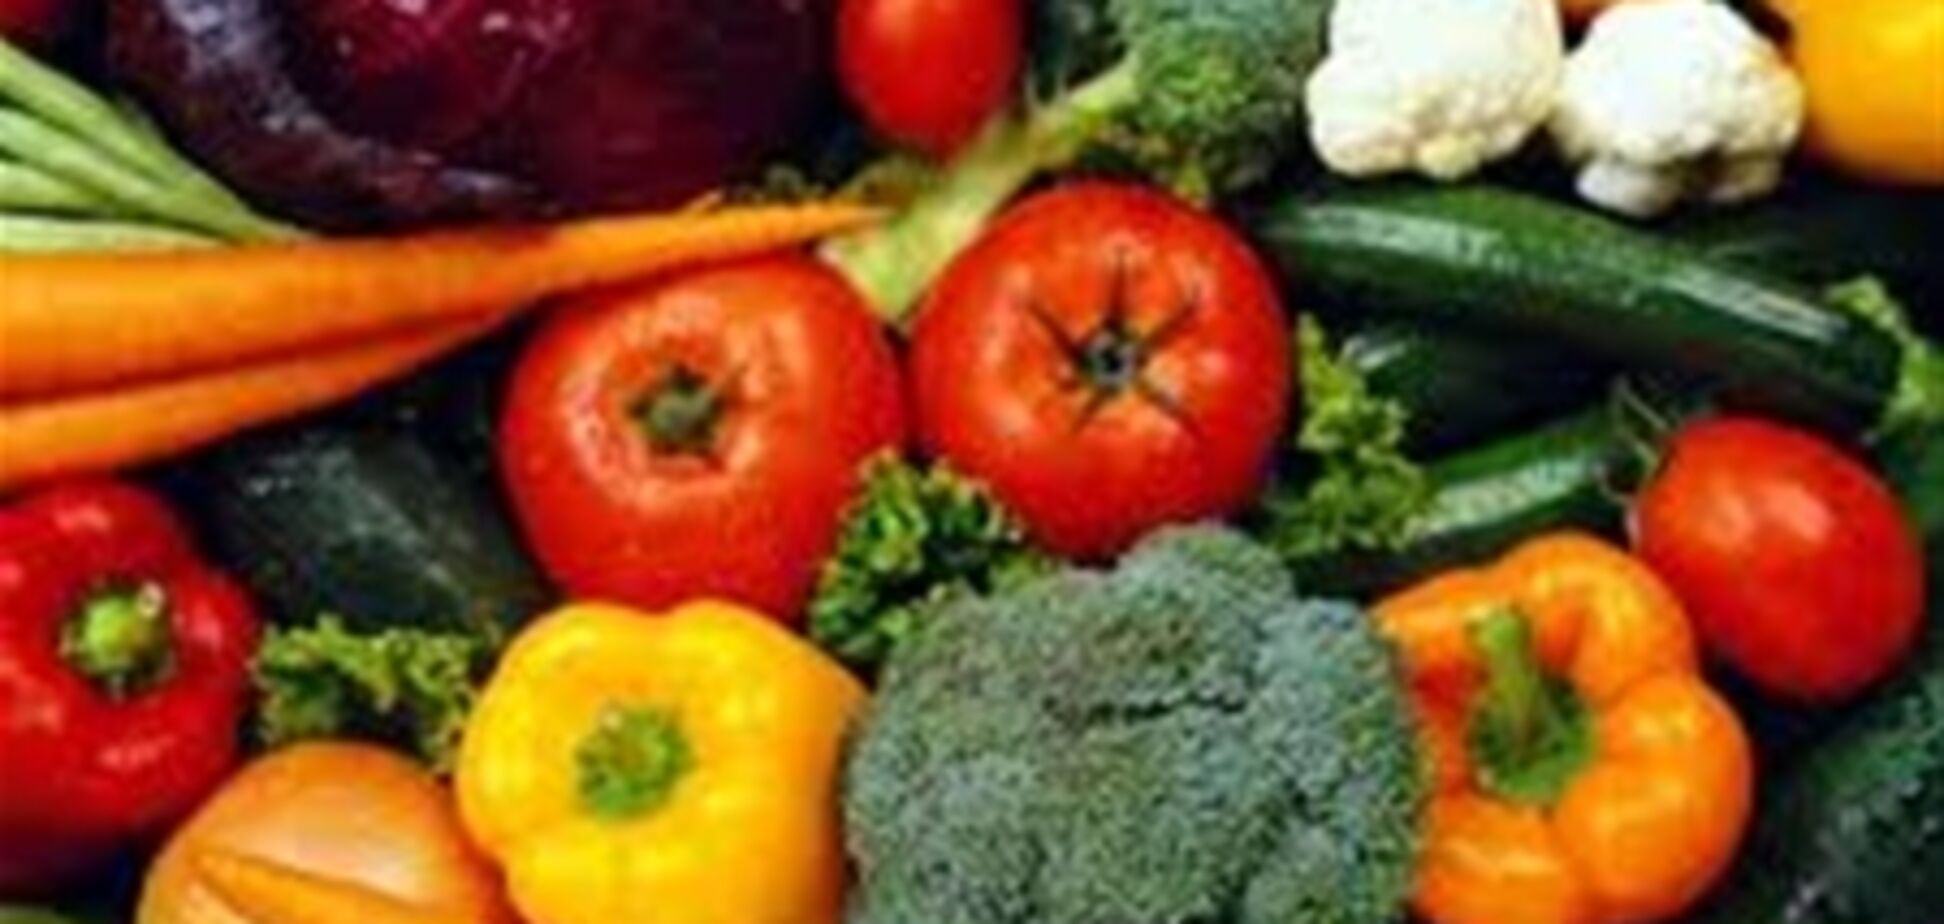 Вегетаринство защищает от возрастной слепоты